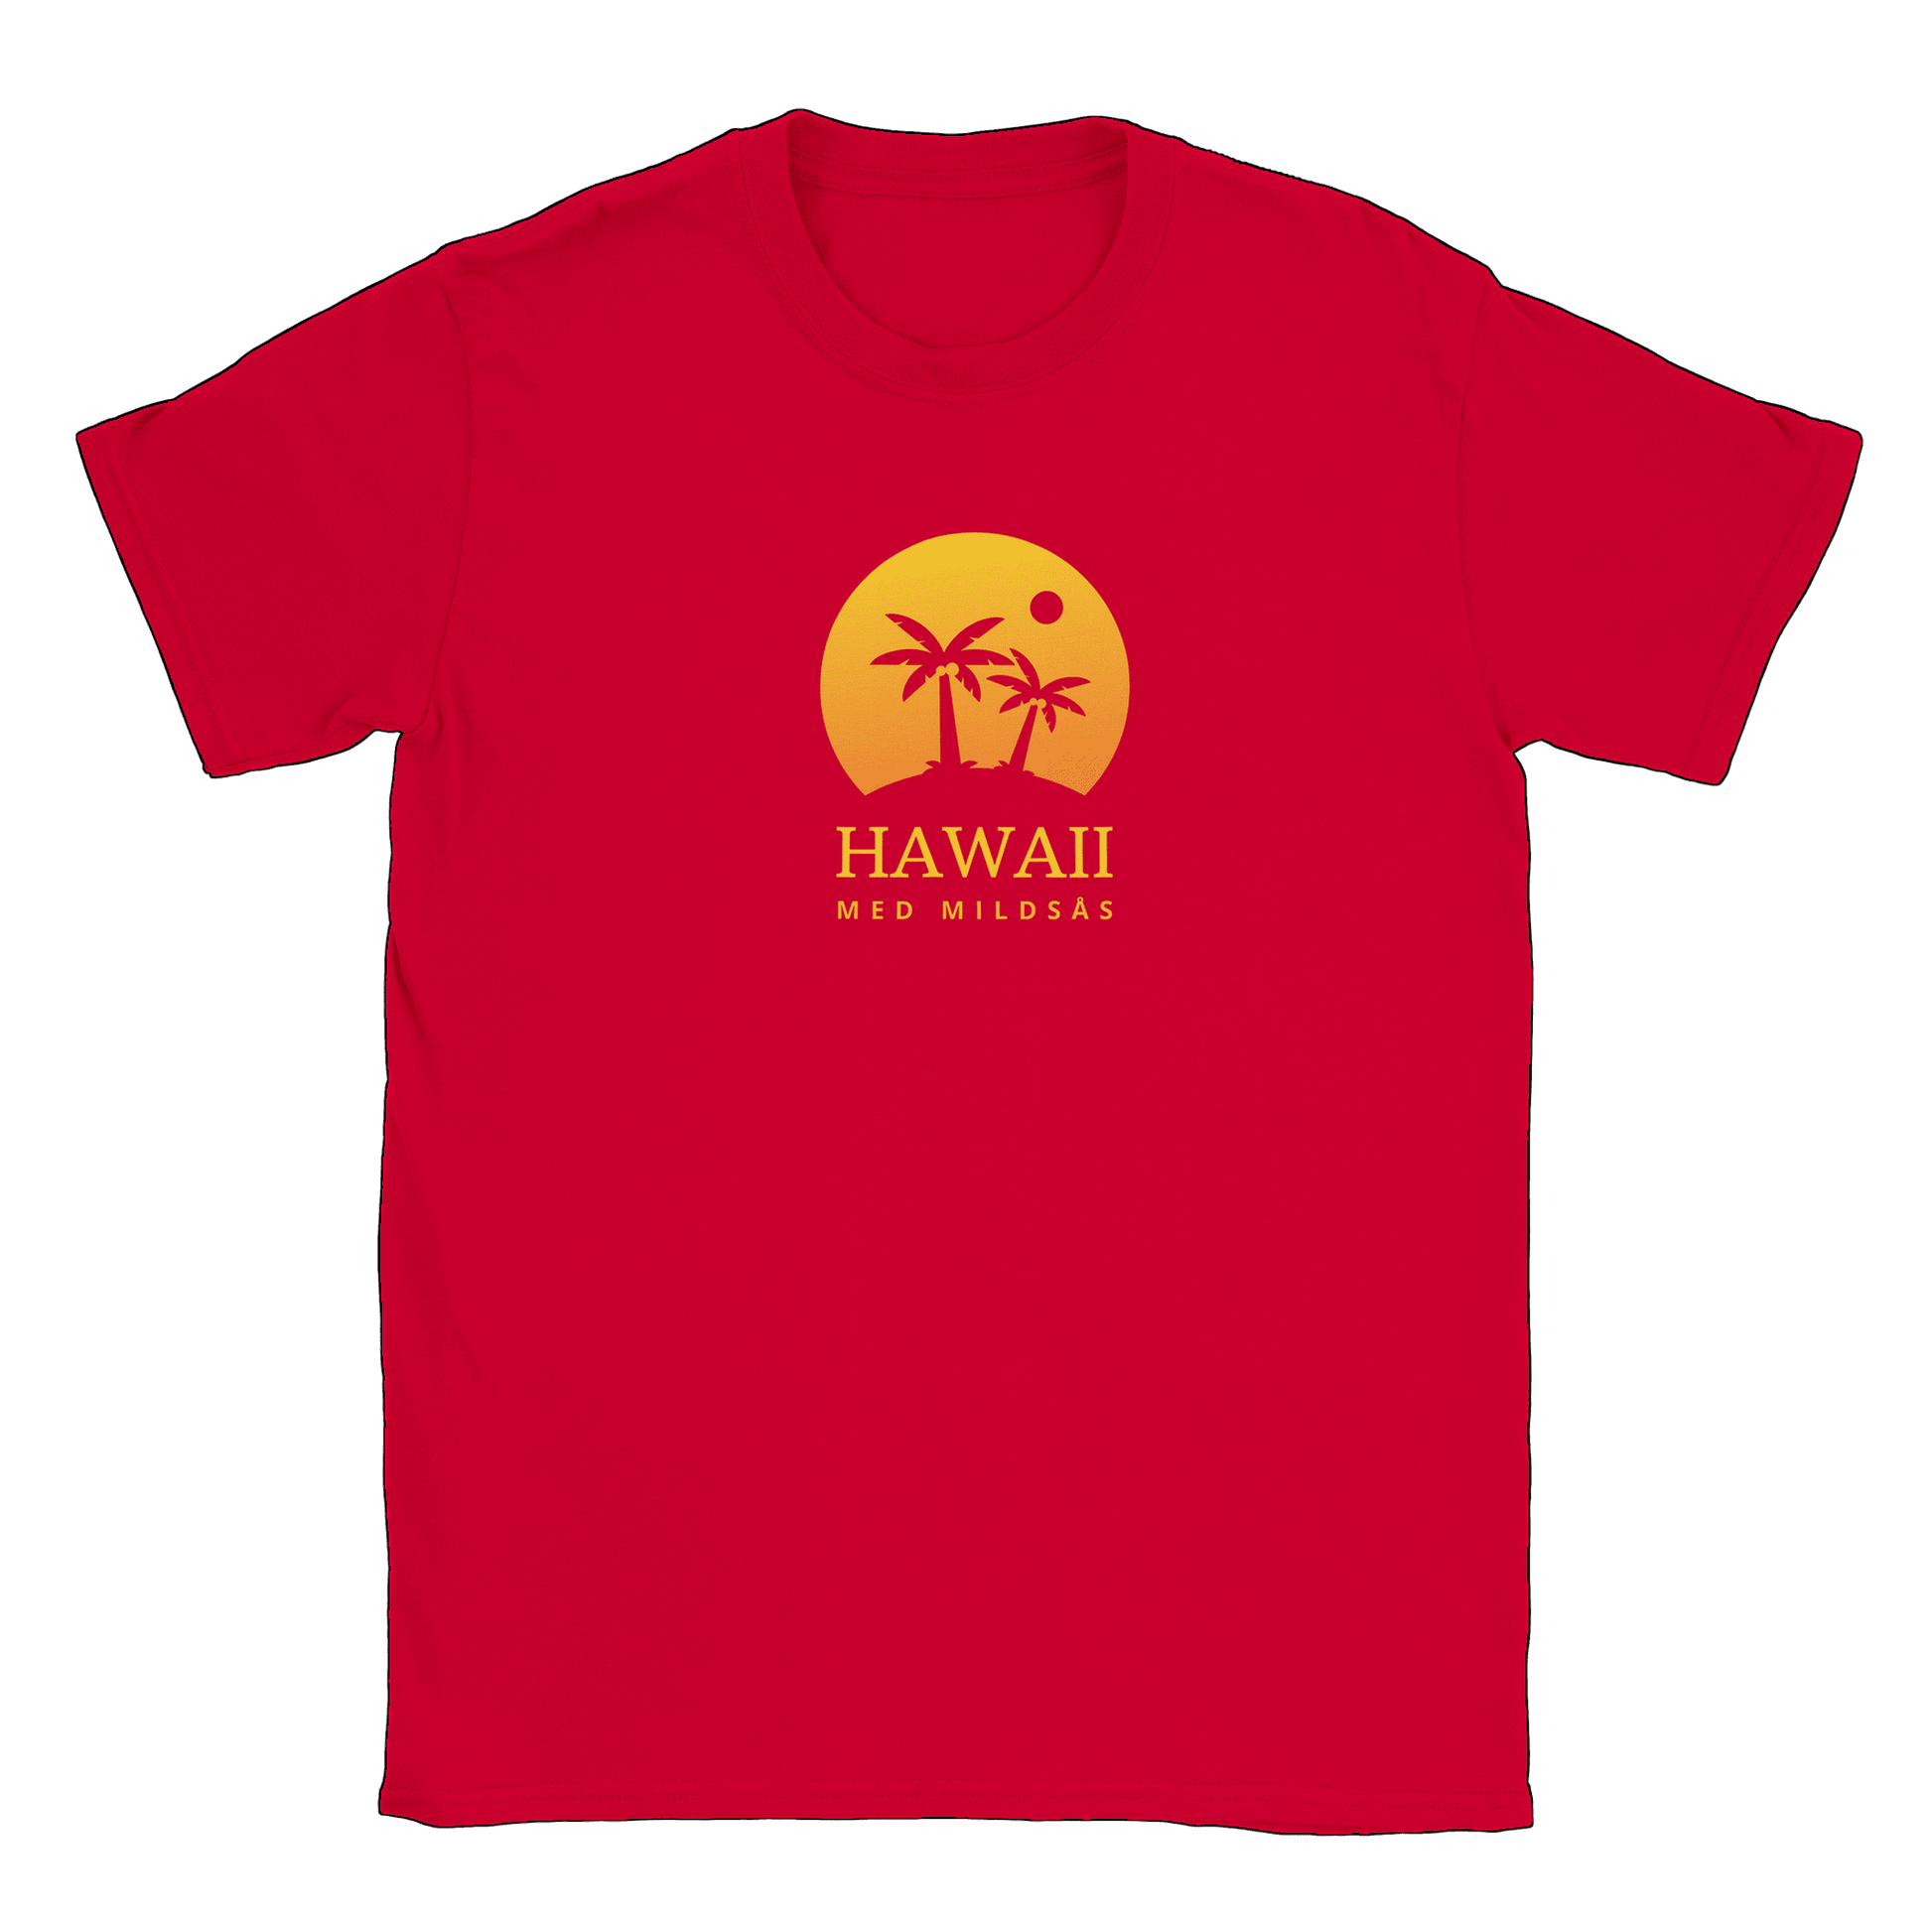 Hawaii med mildsås - T-shirt Röd